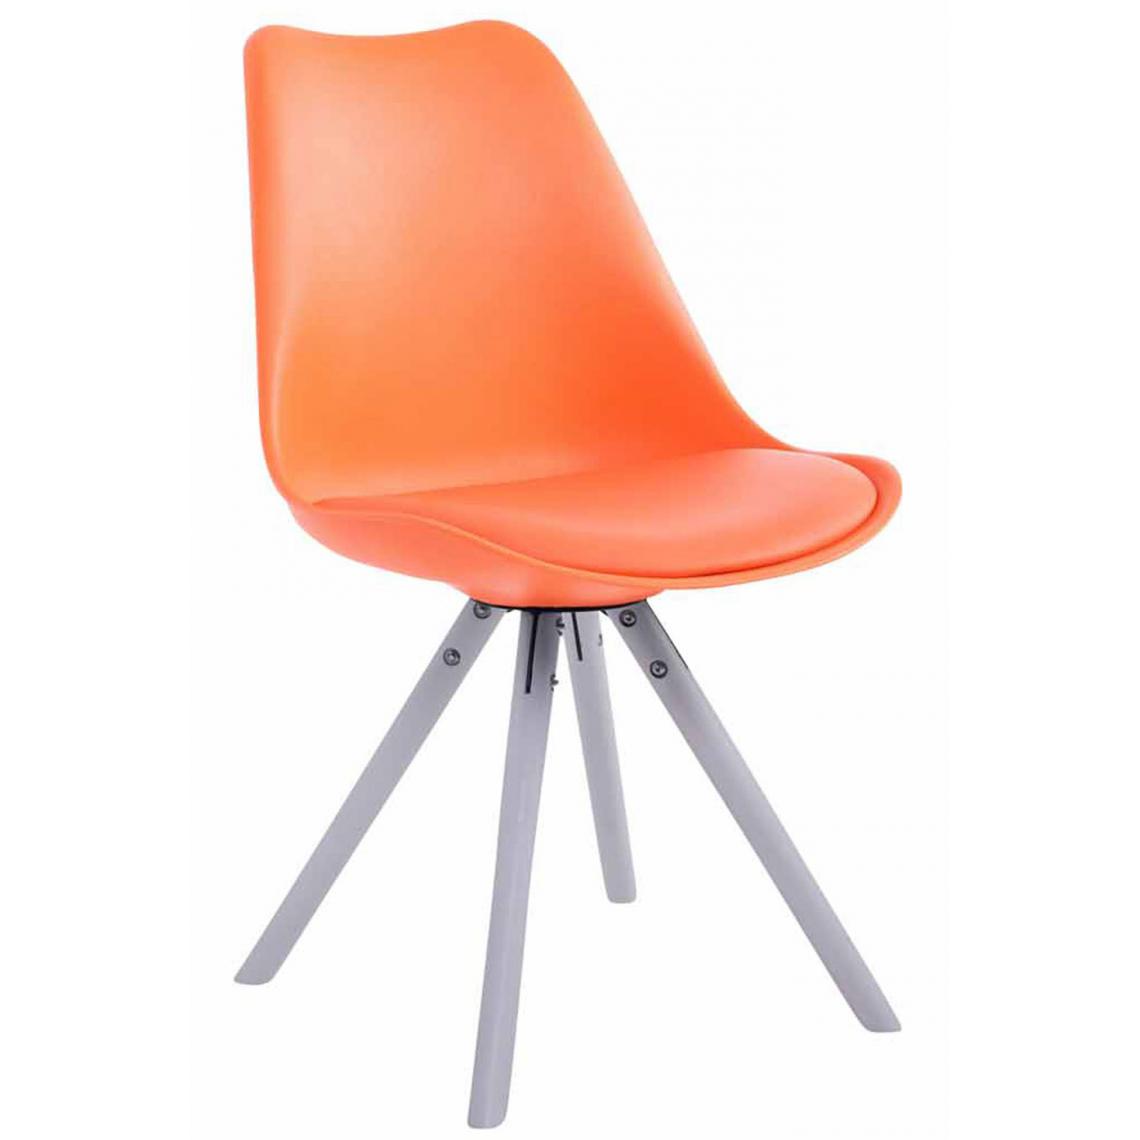 Icaverne - Moderne Chaise visiteur serie Katmandou cuir synthétique rond blanc (chêne) couleur Orange - Chaises